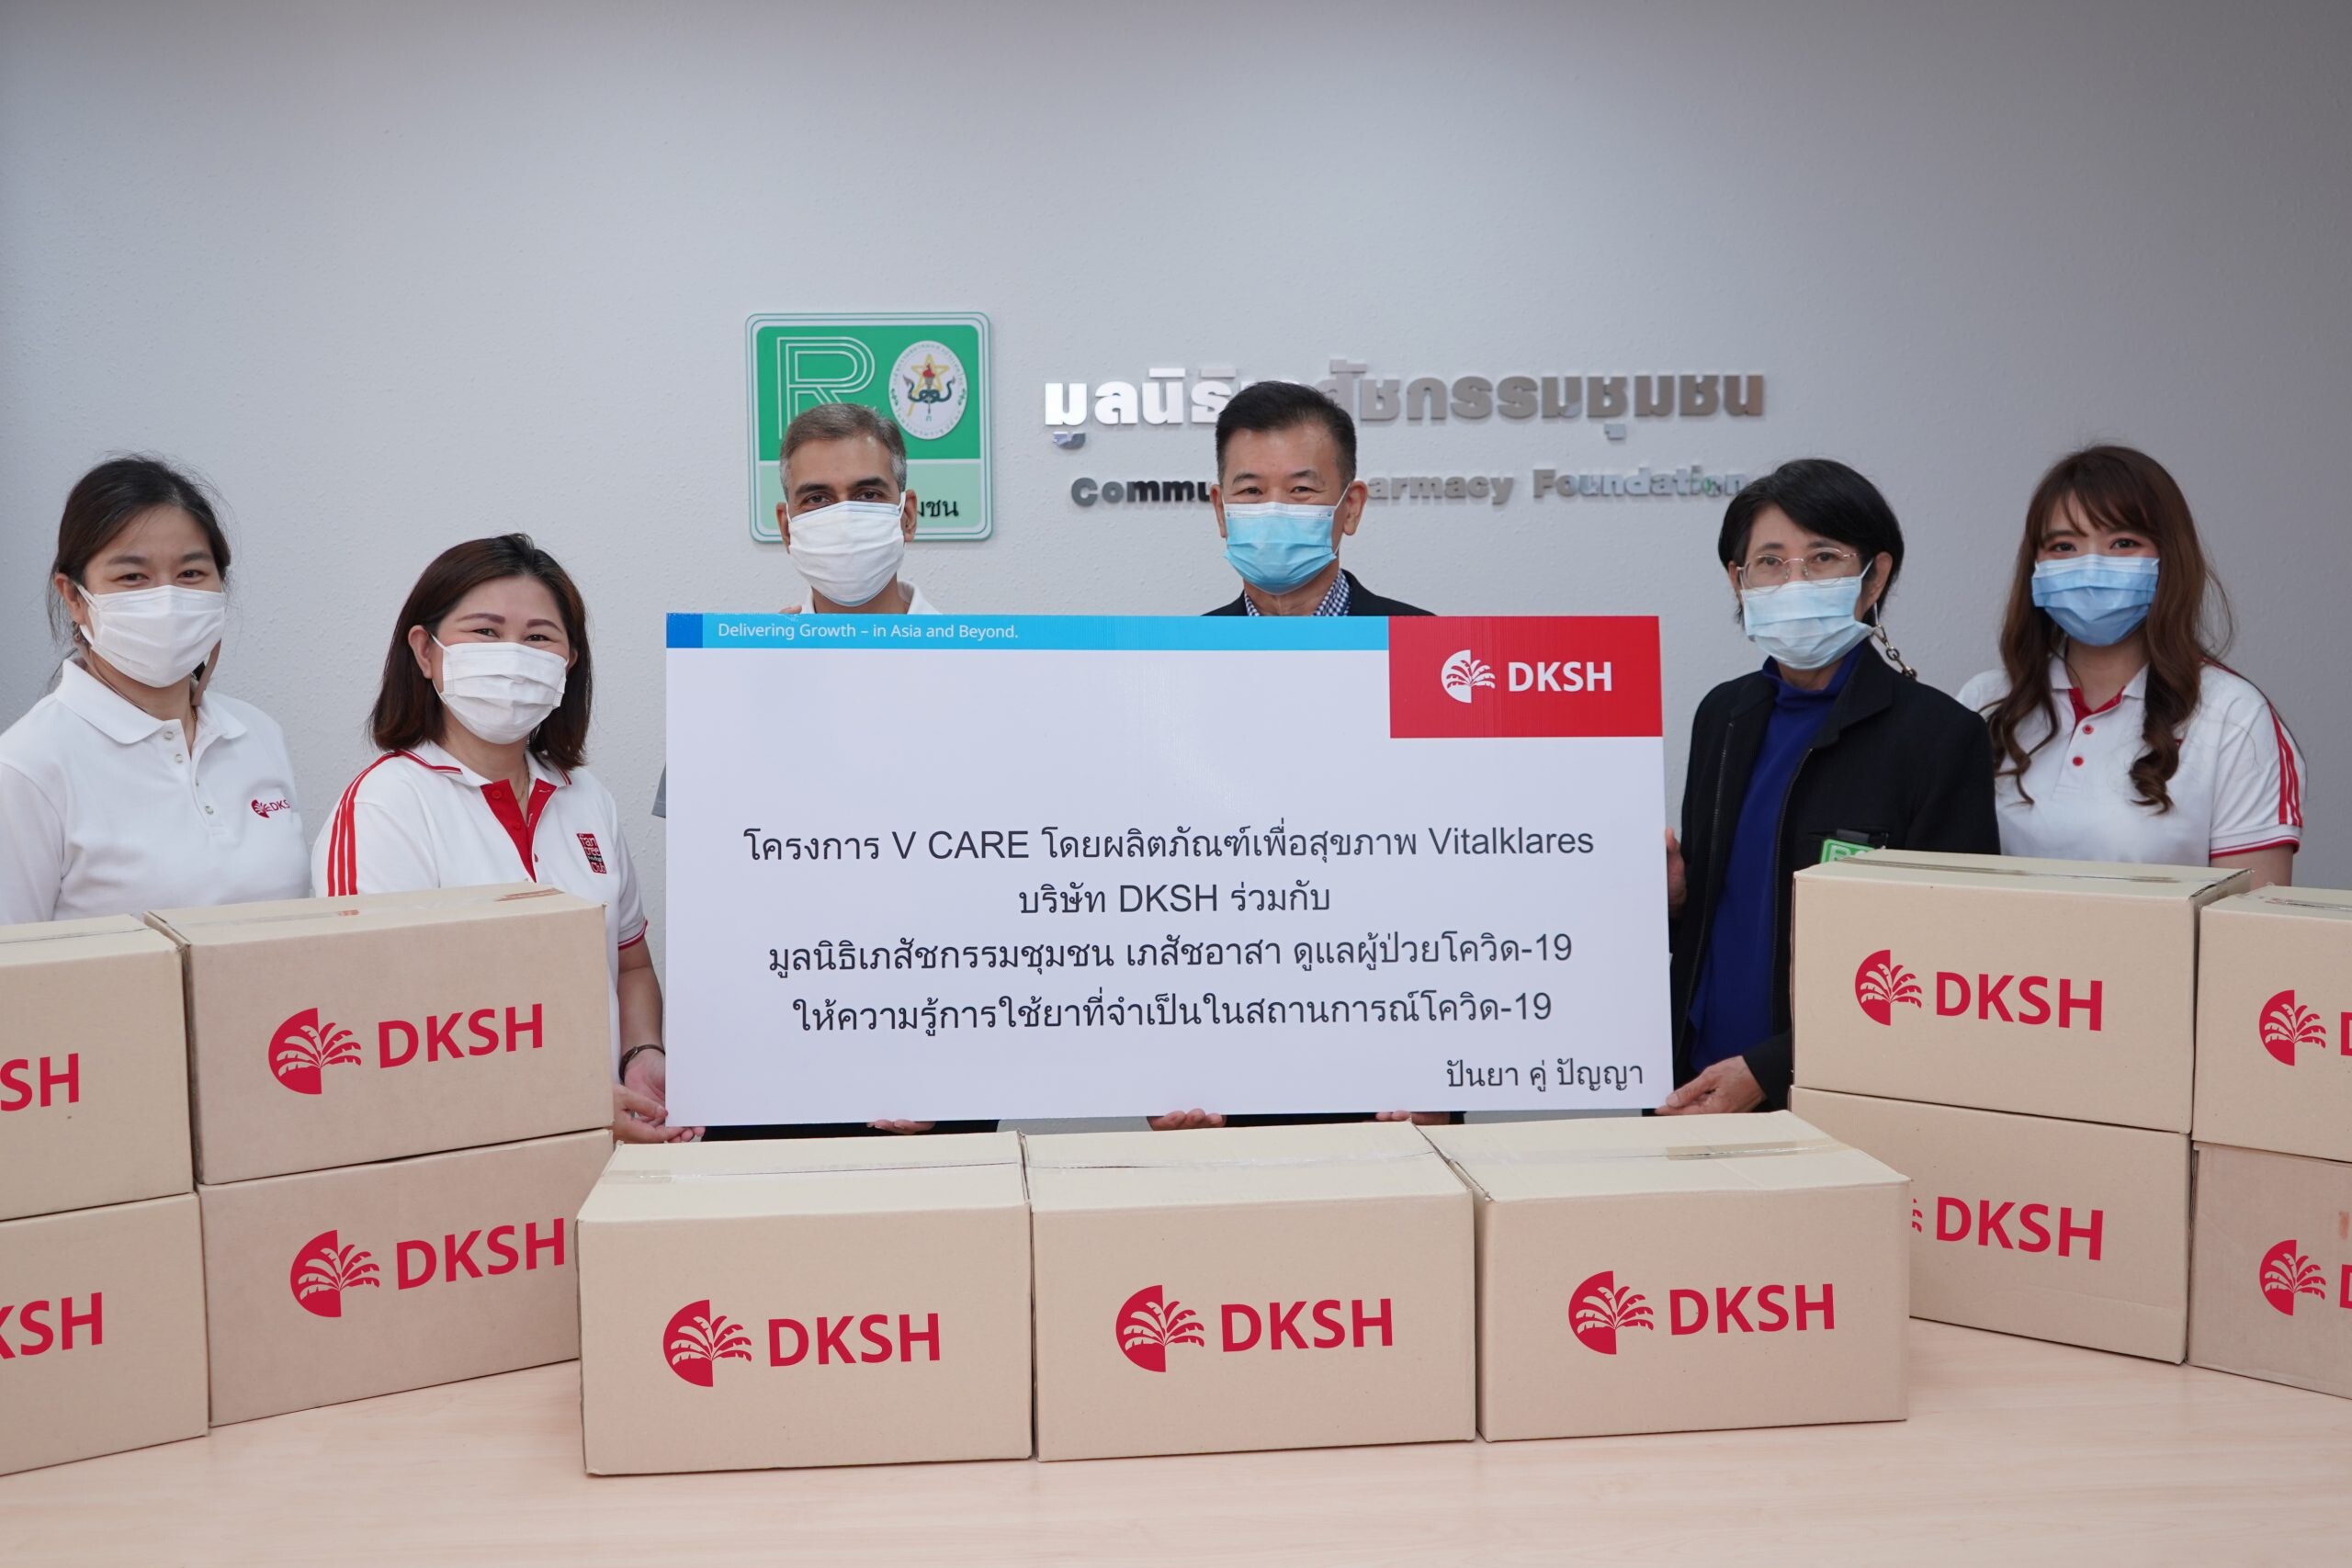 DKSH เปิดตัวแคมเปญ "V Care" มุ่งส่งเสริมความรู้ด้านการใช้ยาจำเป็นผ่านเครือข่ายร้านขายยาทั่วประเทศ